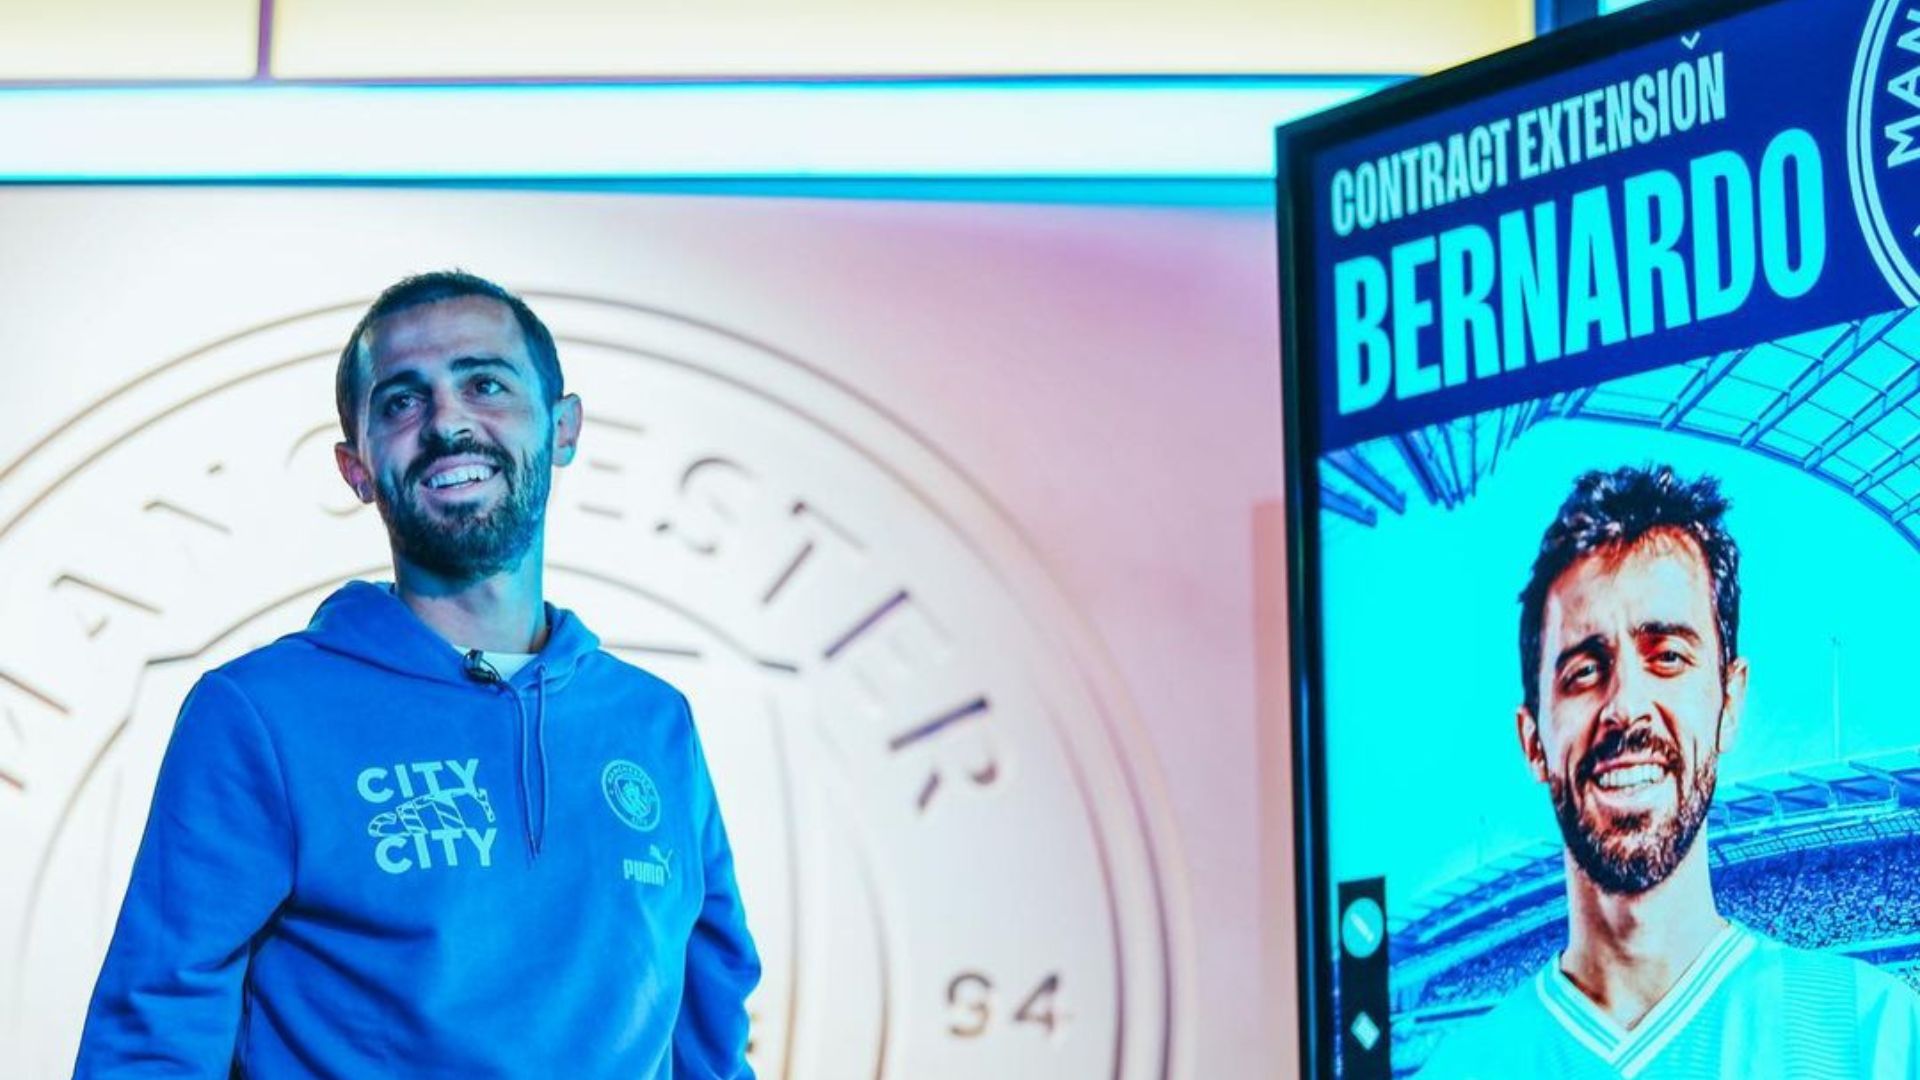 Ruang Ganti Manchester City Jadi Alasan Bernardo Silva Bertahan 